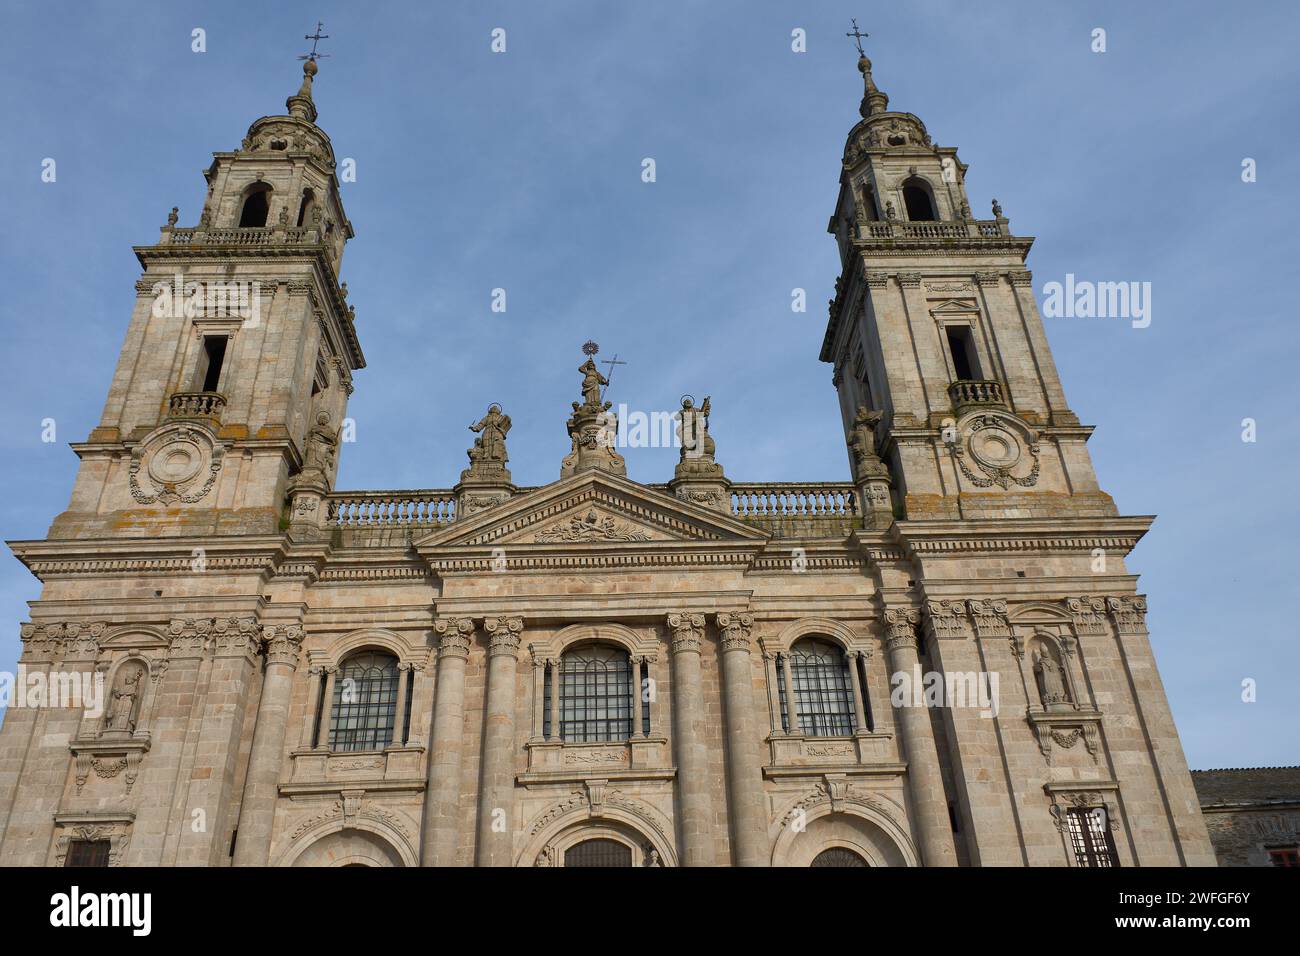 Außenfassade der Kathedrale Lugo in Spanien im Renaissance- und neoklassizistischen Stil, auch Kathedrale Santa Maria genannt Stockfoto